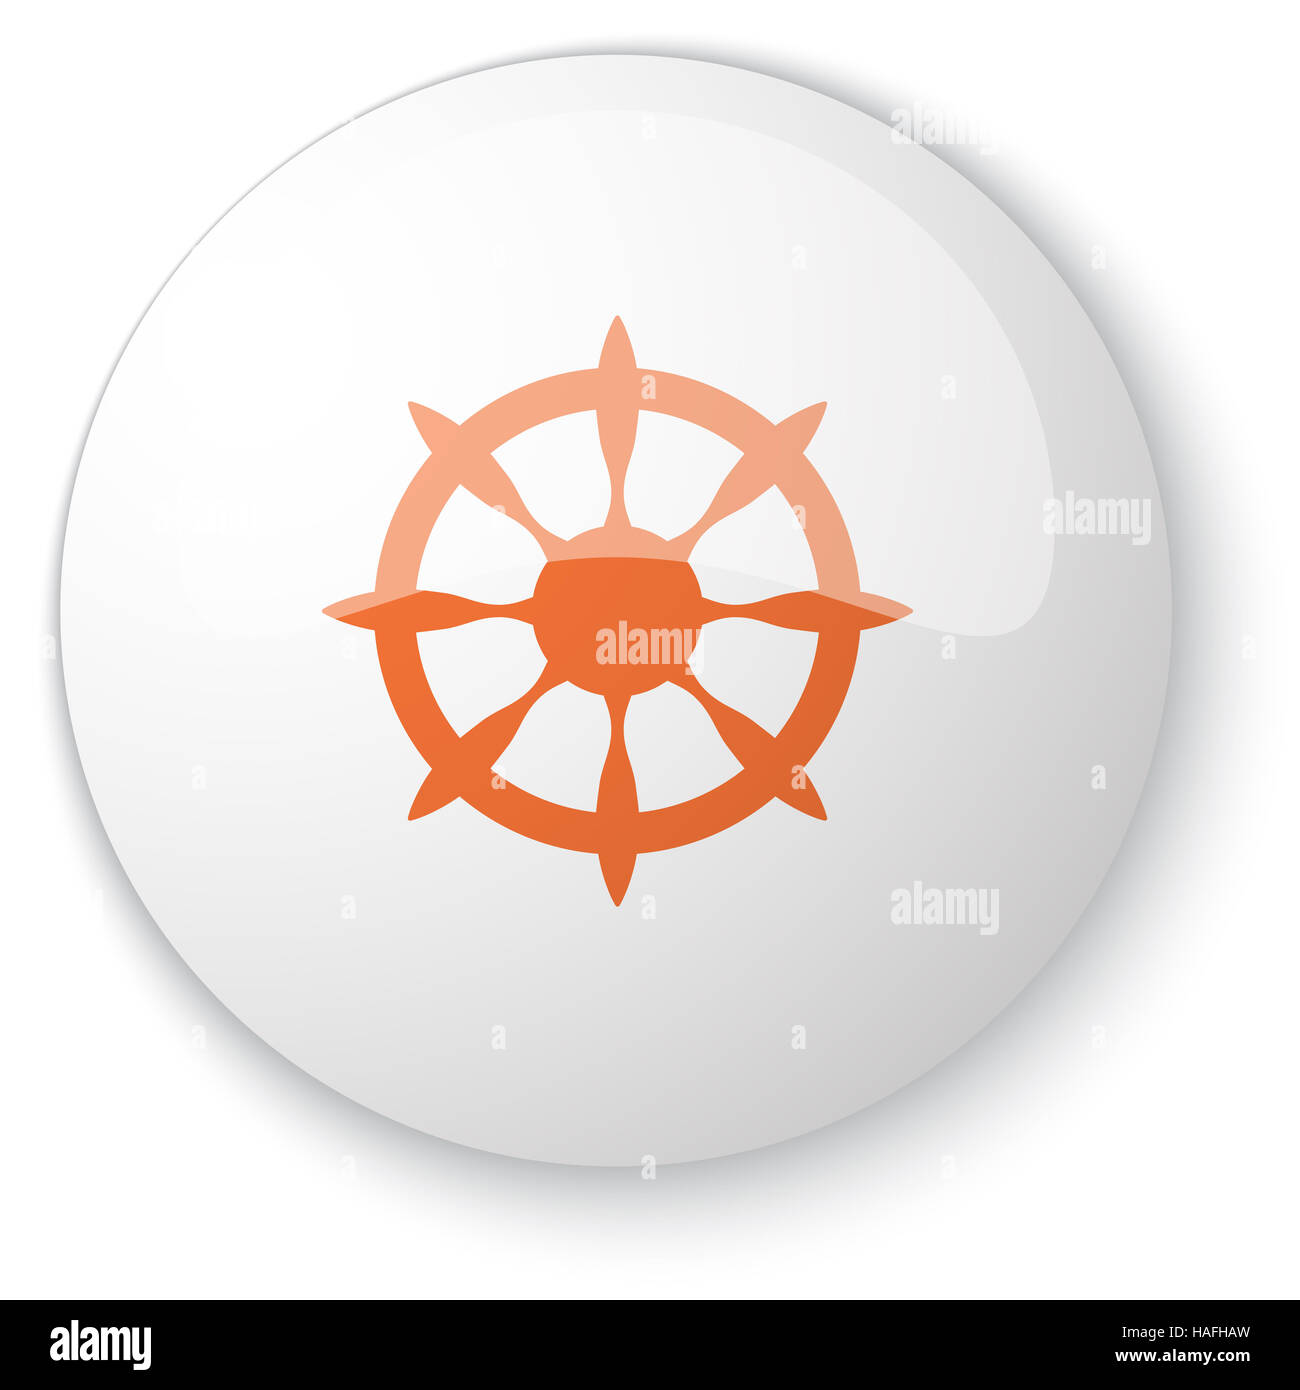 Bouton web blanc brillant avec l'icône de roue bateau orange sur fond blanc Banque D'Images